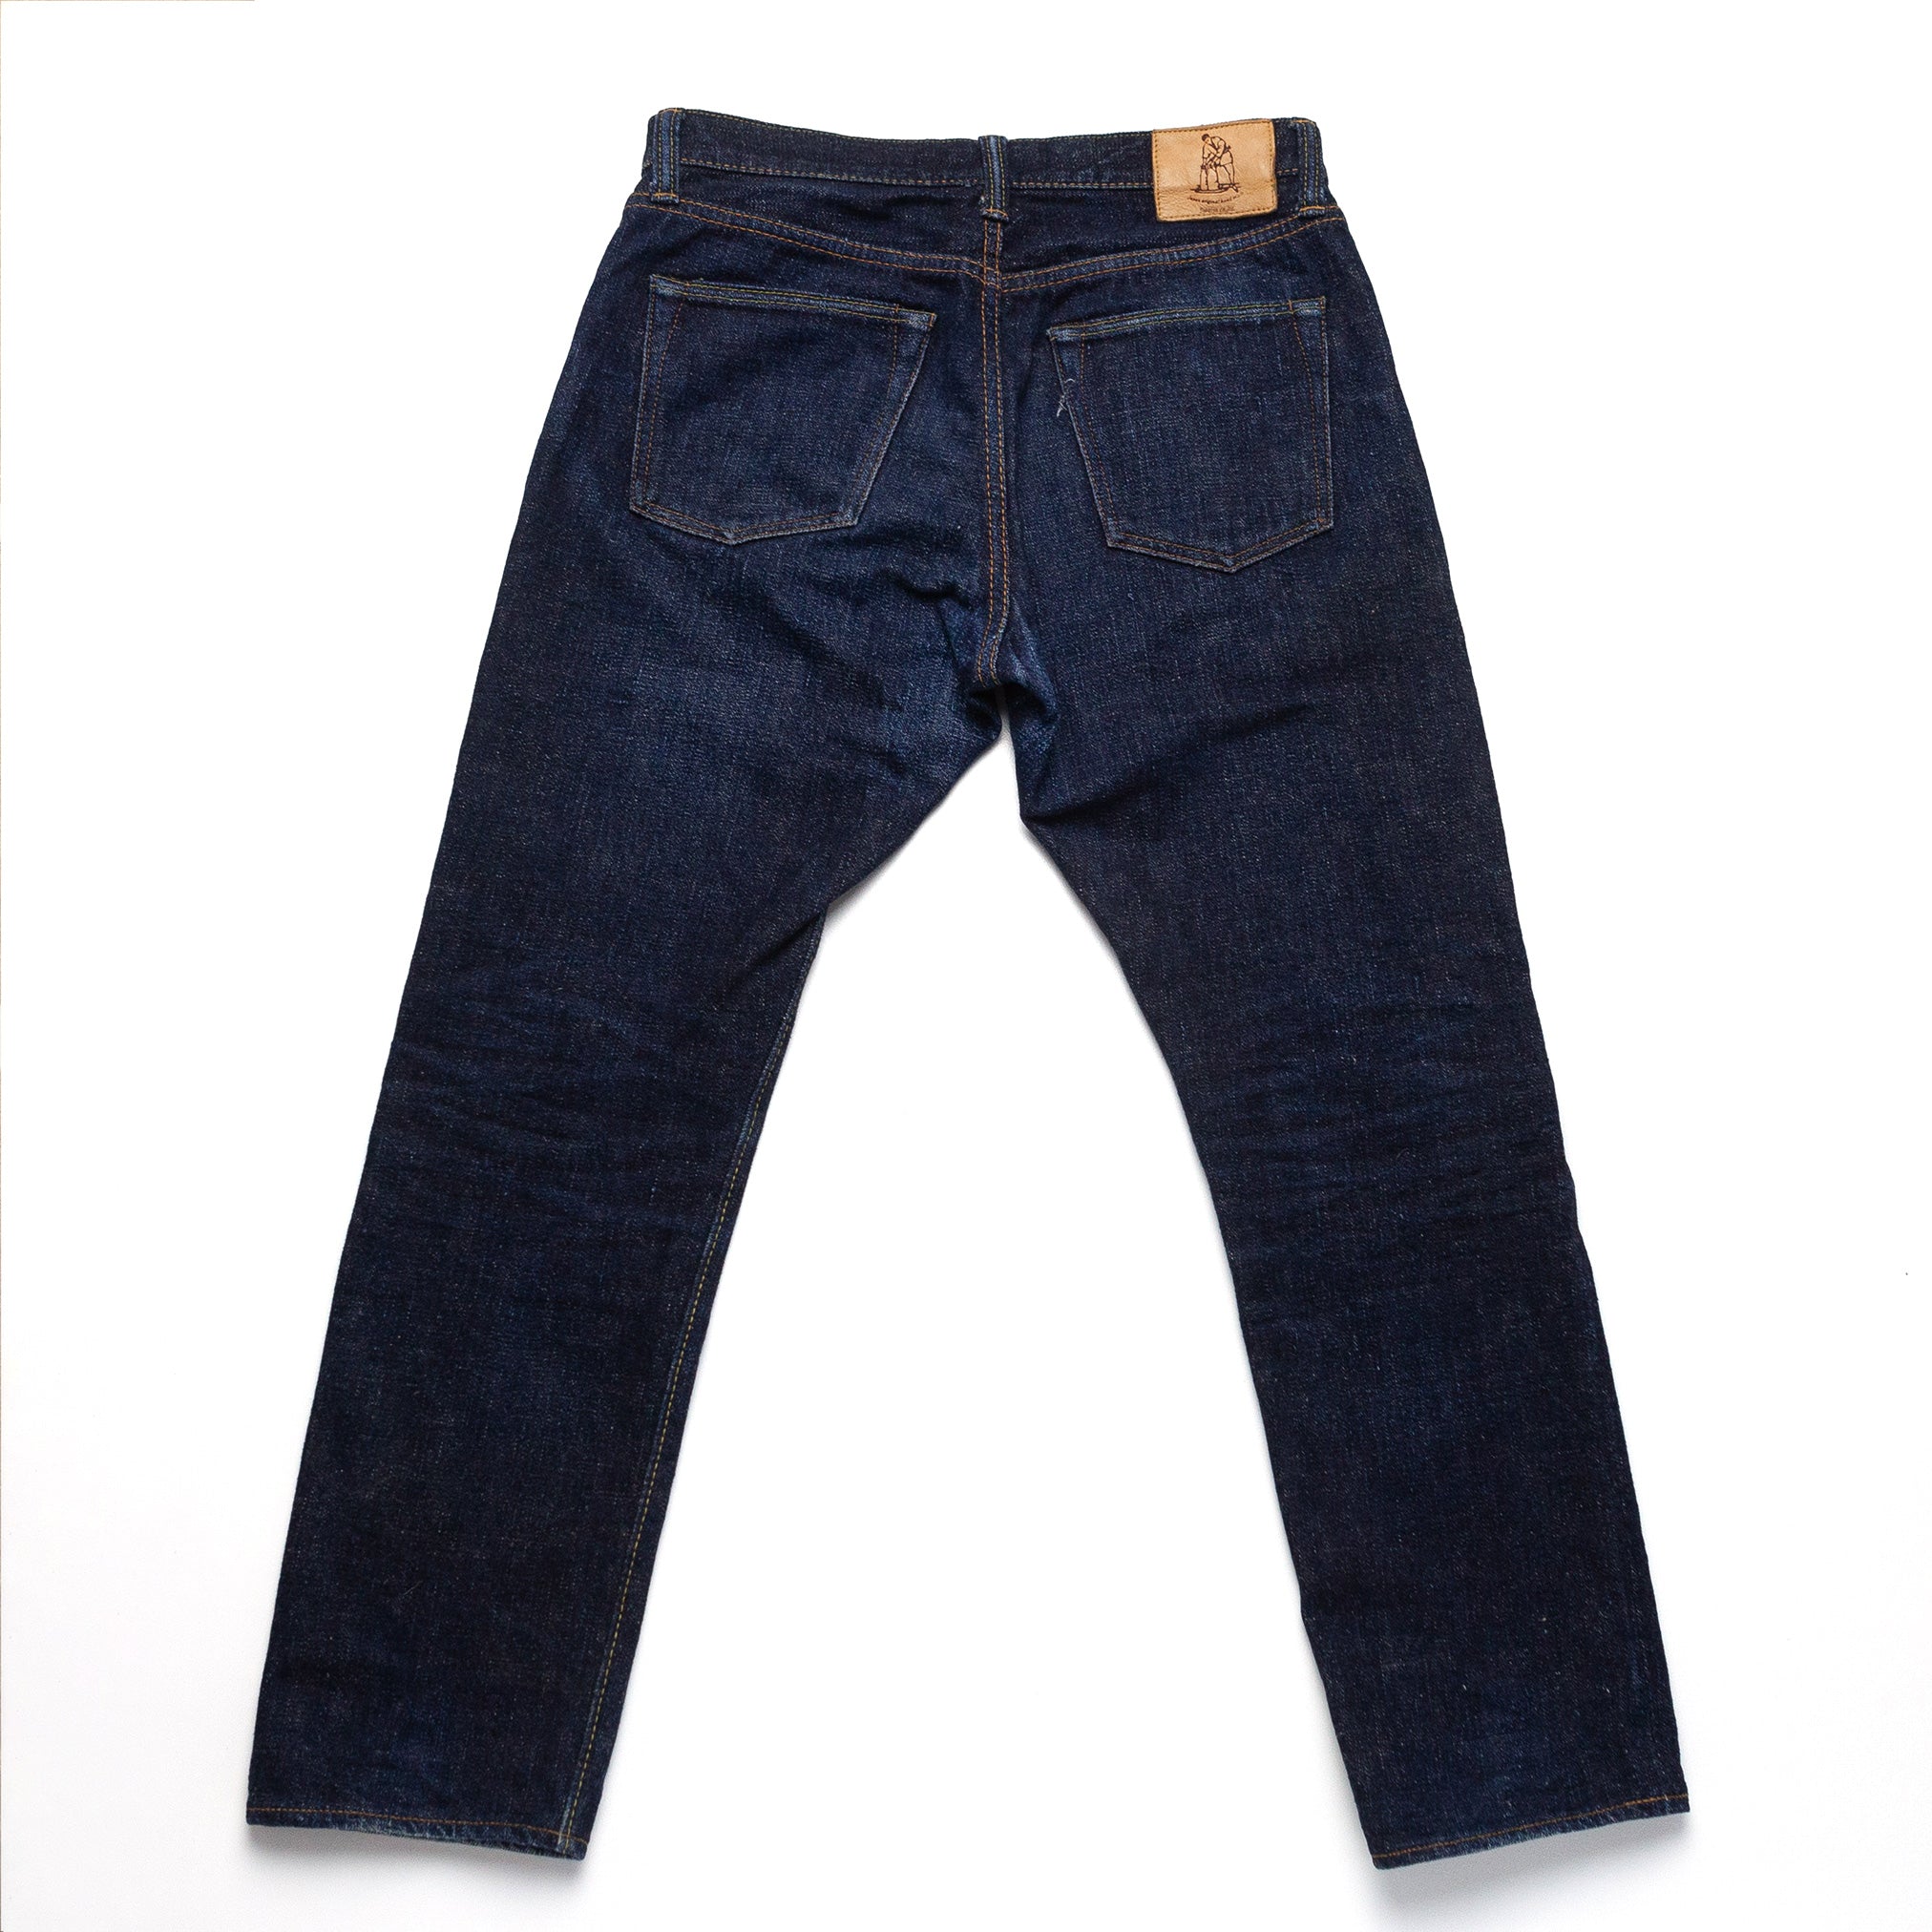 Pure Blue Japan Jeans - 34